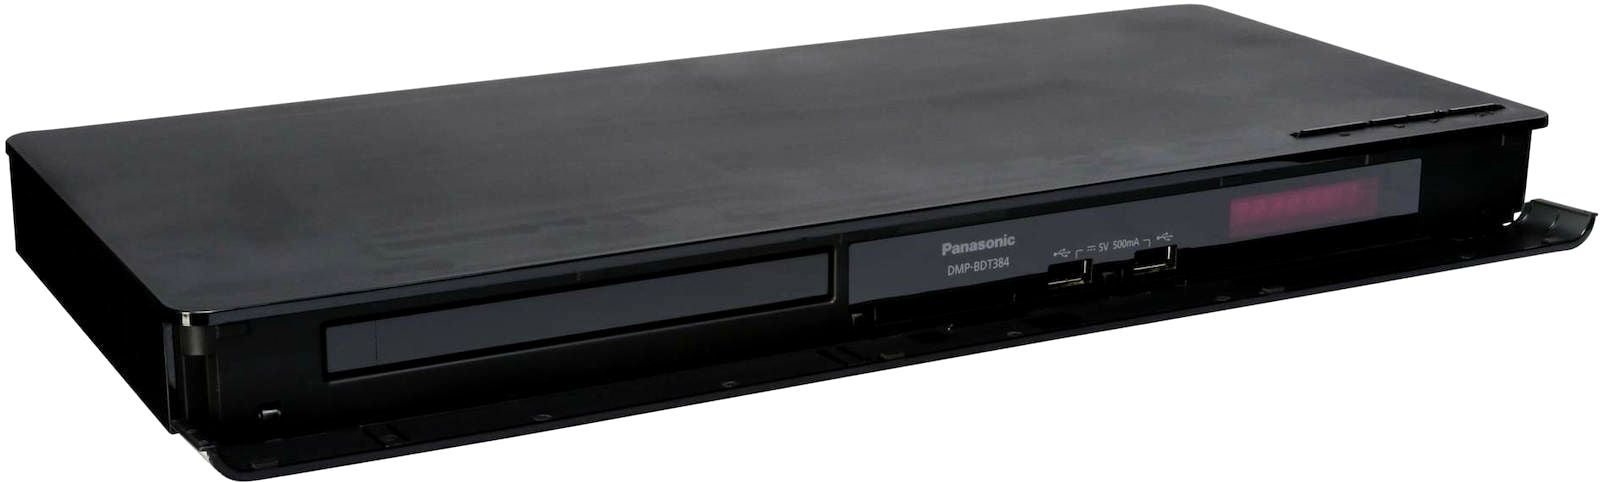 Blu-ray afspiller, Panasonic, DMP-BDT384